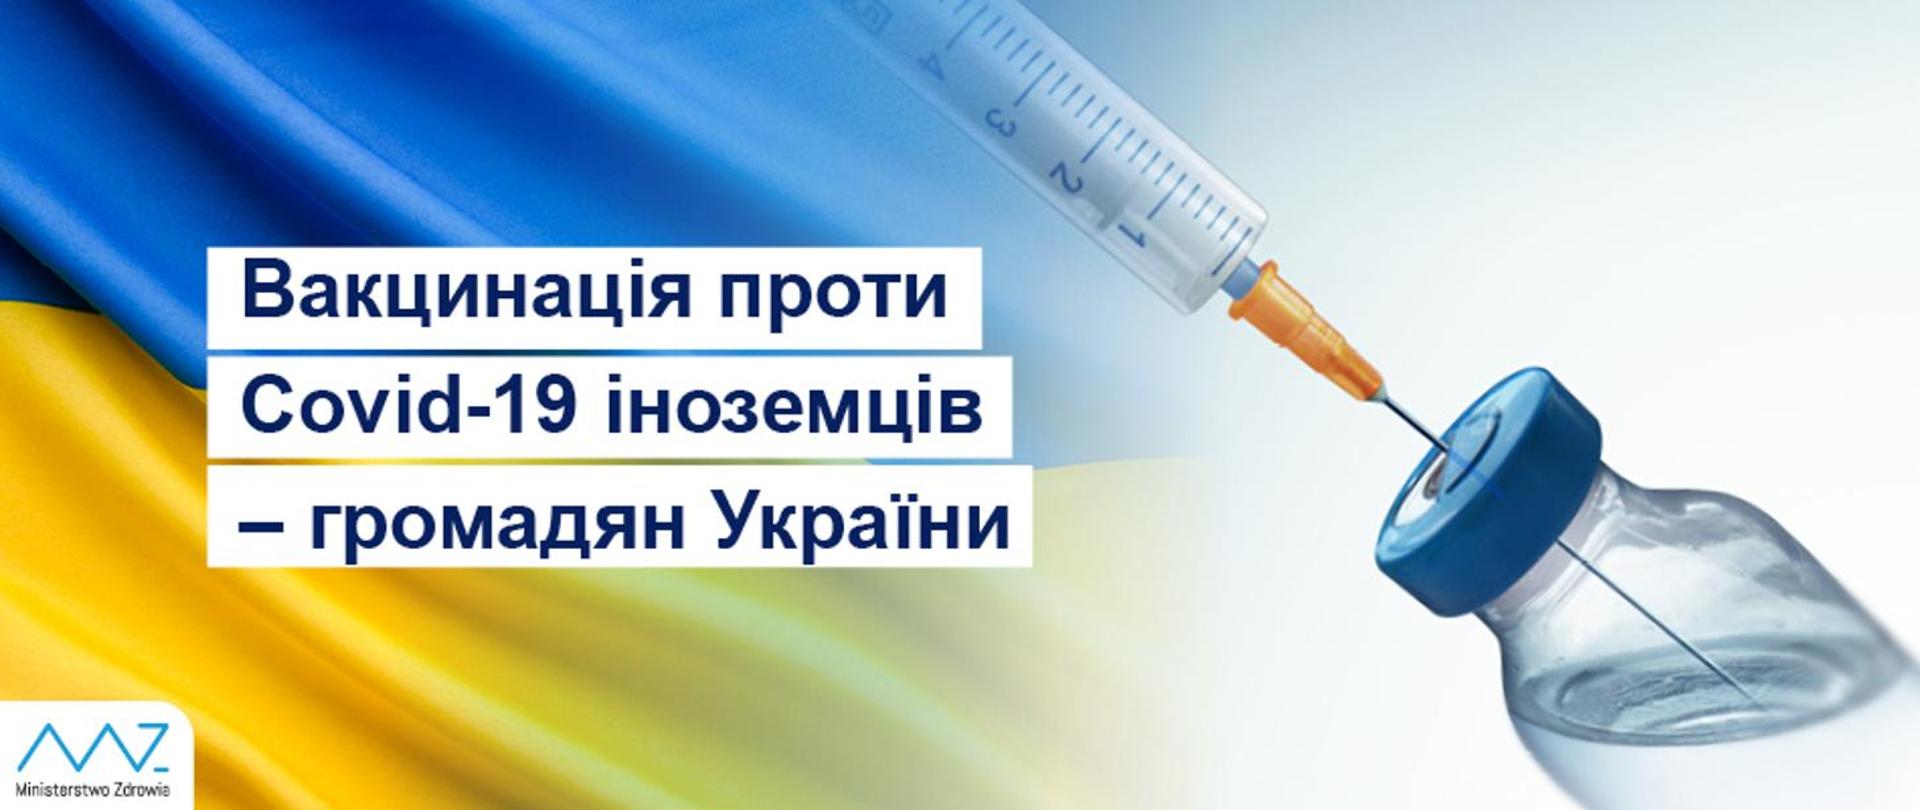 Вакцинація проти Covid-19 іноземців – громадян України